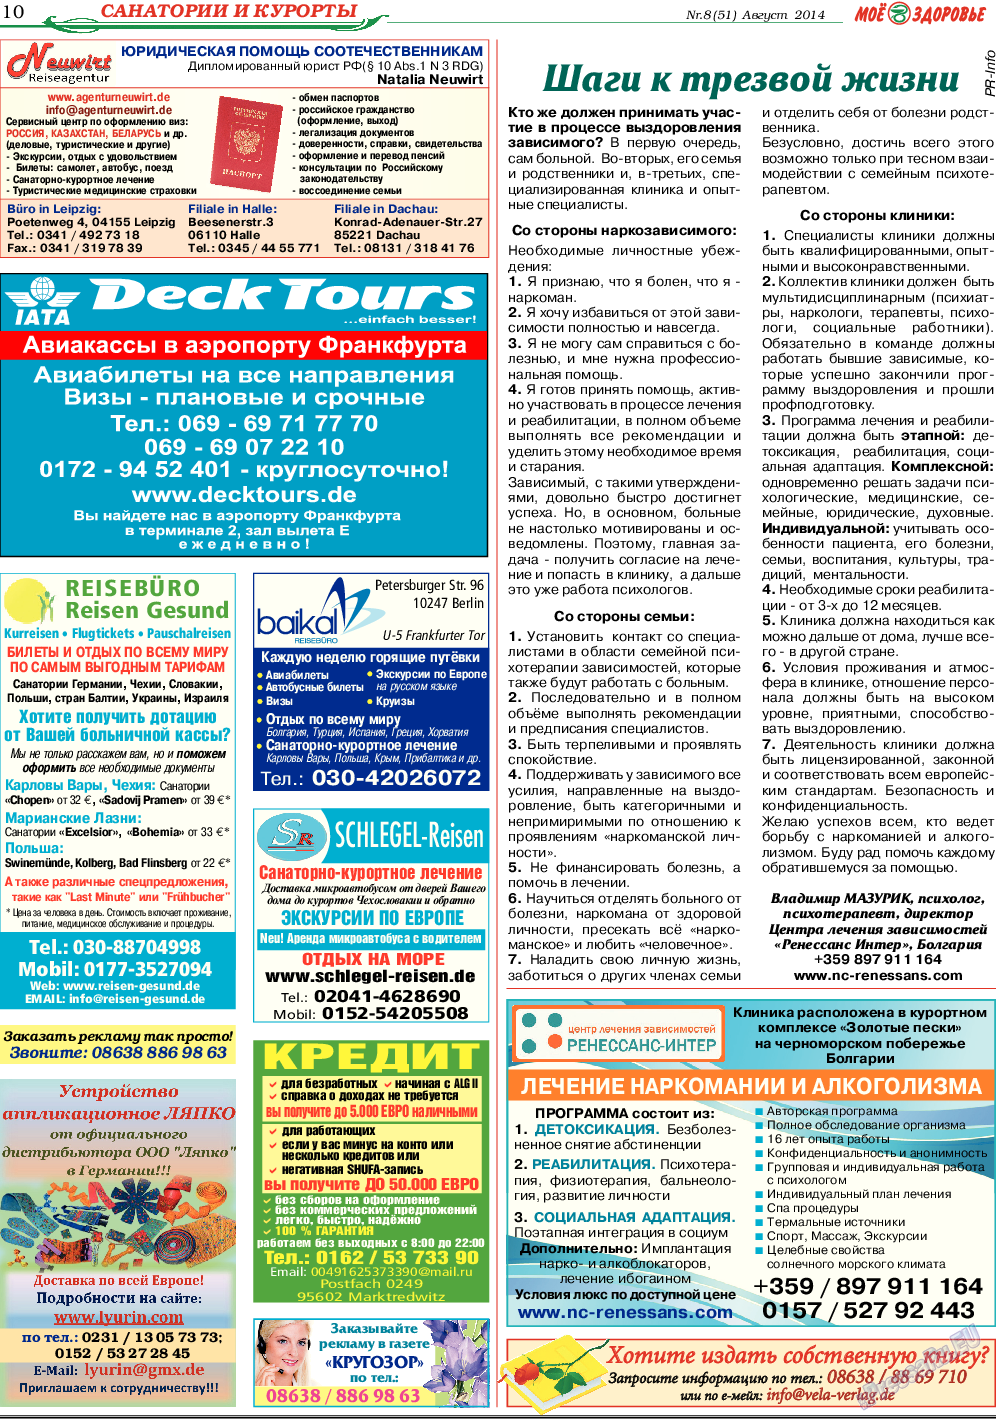 Кругозор (газета). 2014 год, номер 8, стр. 10